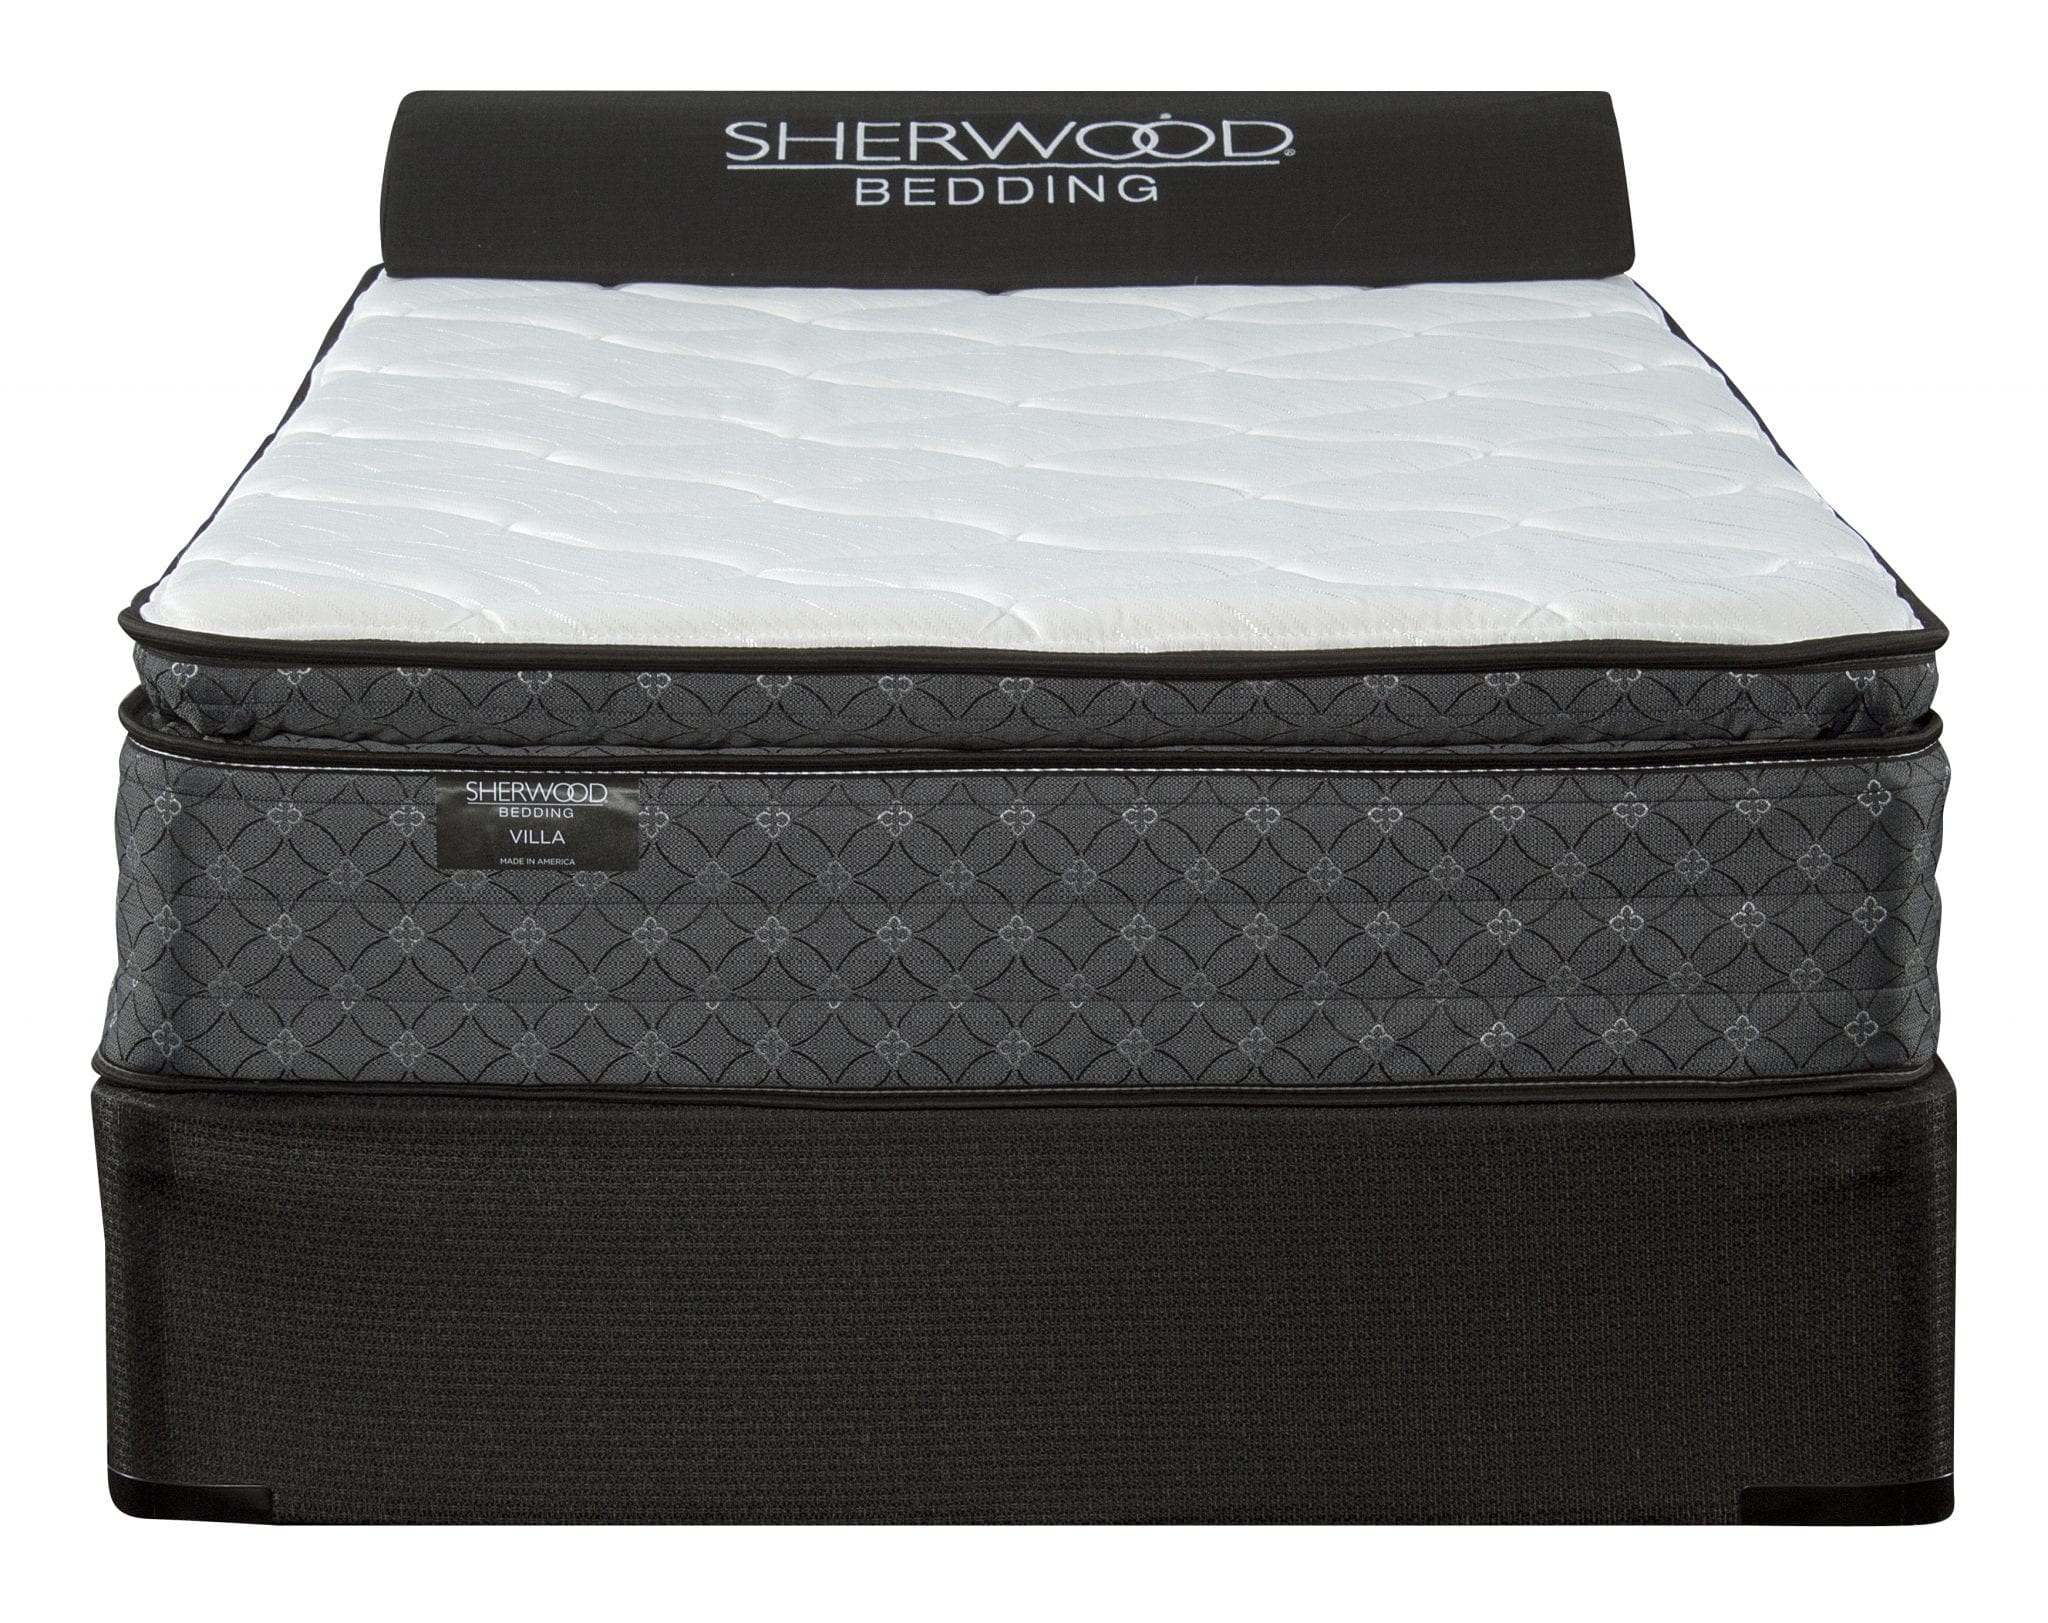 Sherwood Villa Pillow Top Mattress, King Size Bed Sheets For Pillow Top Mattress